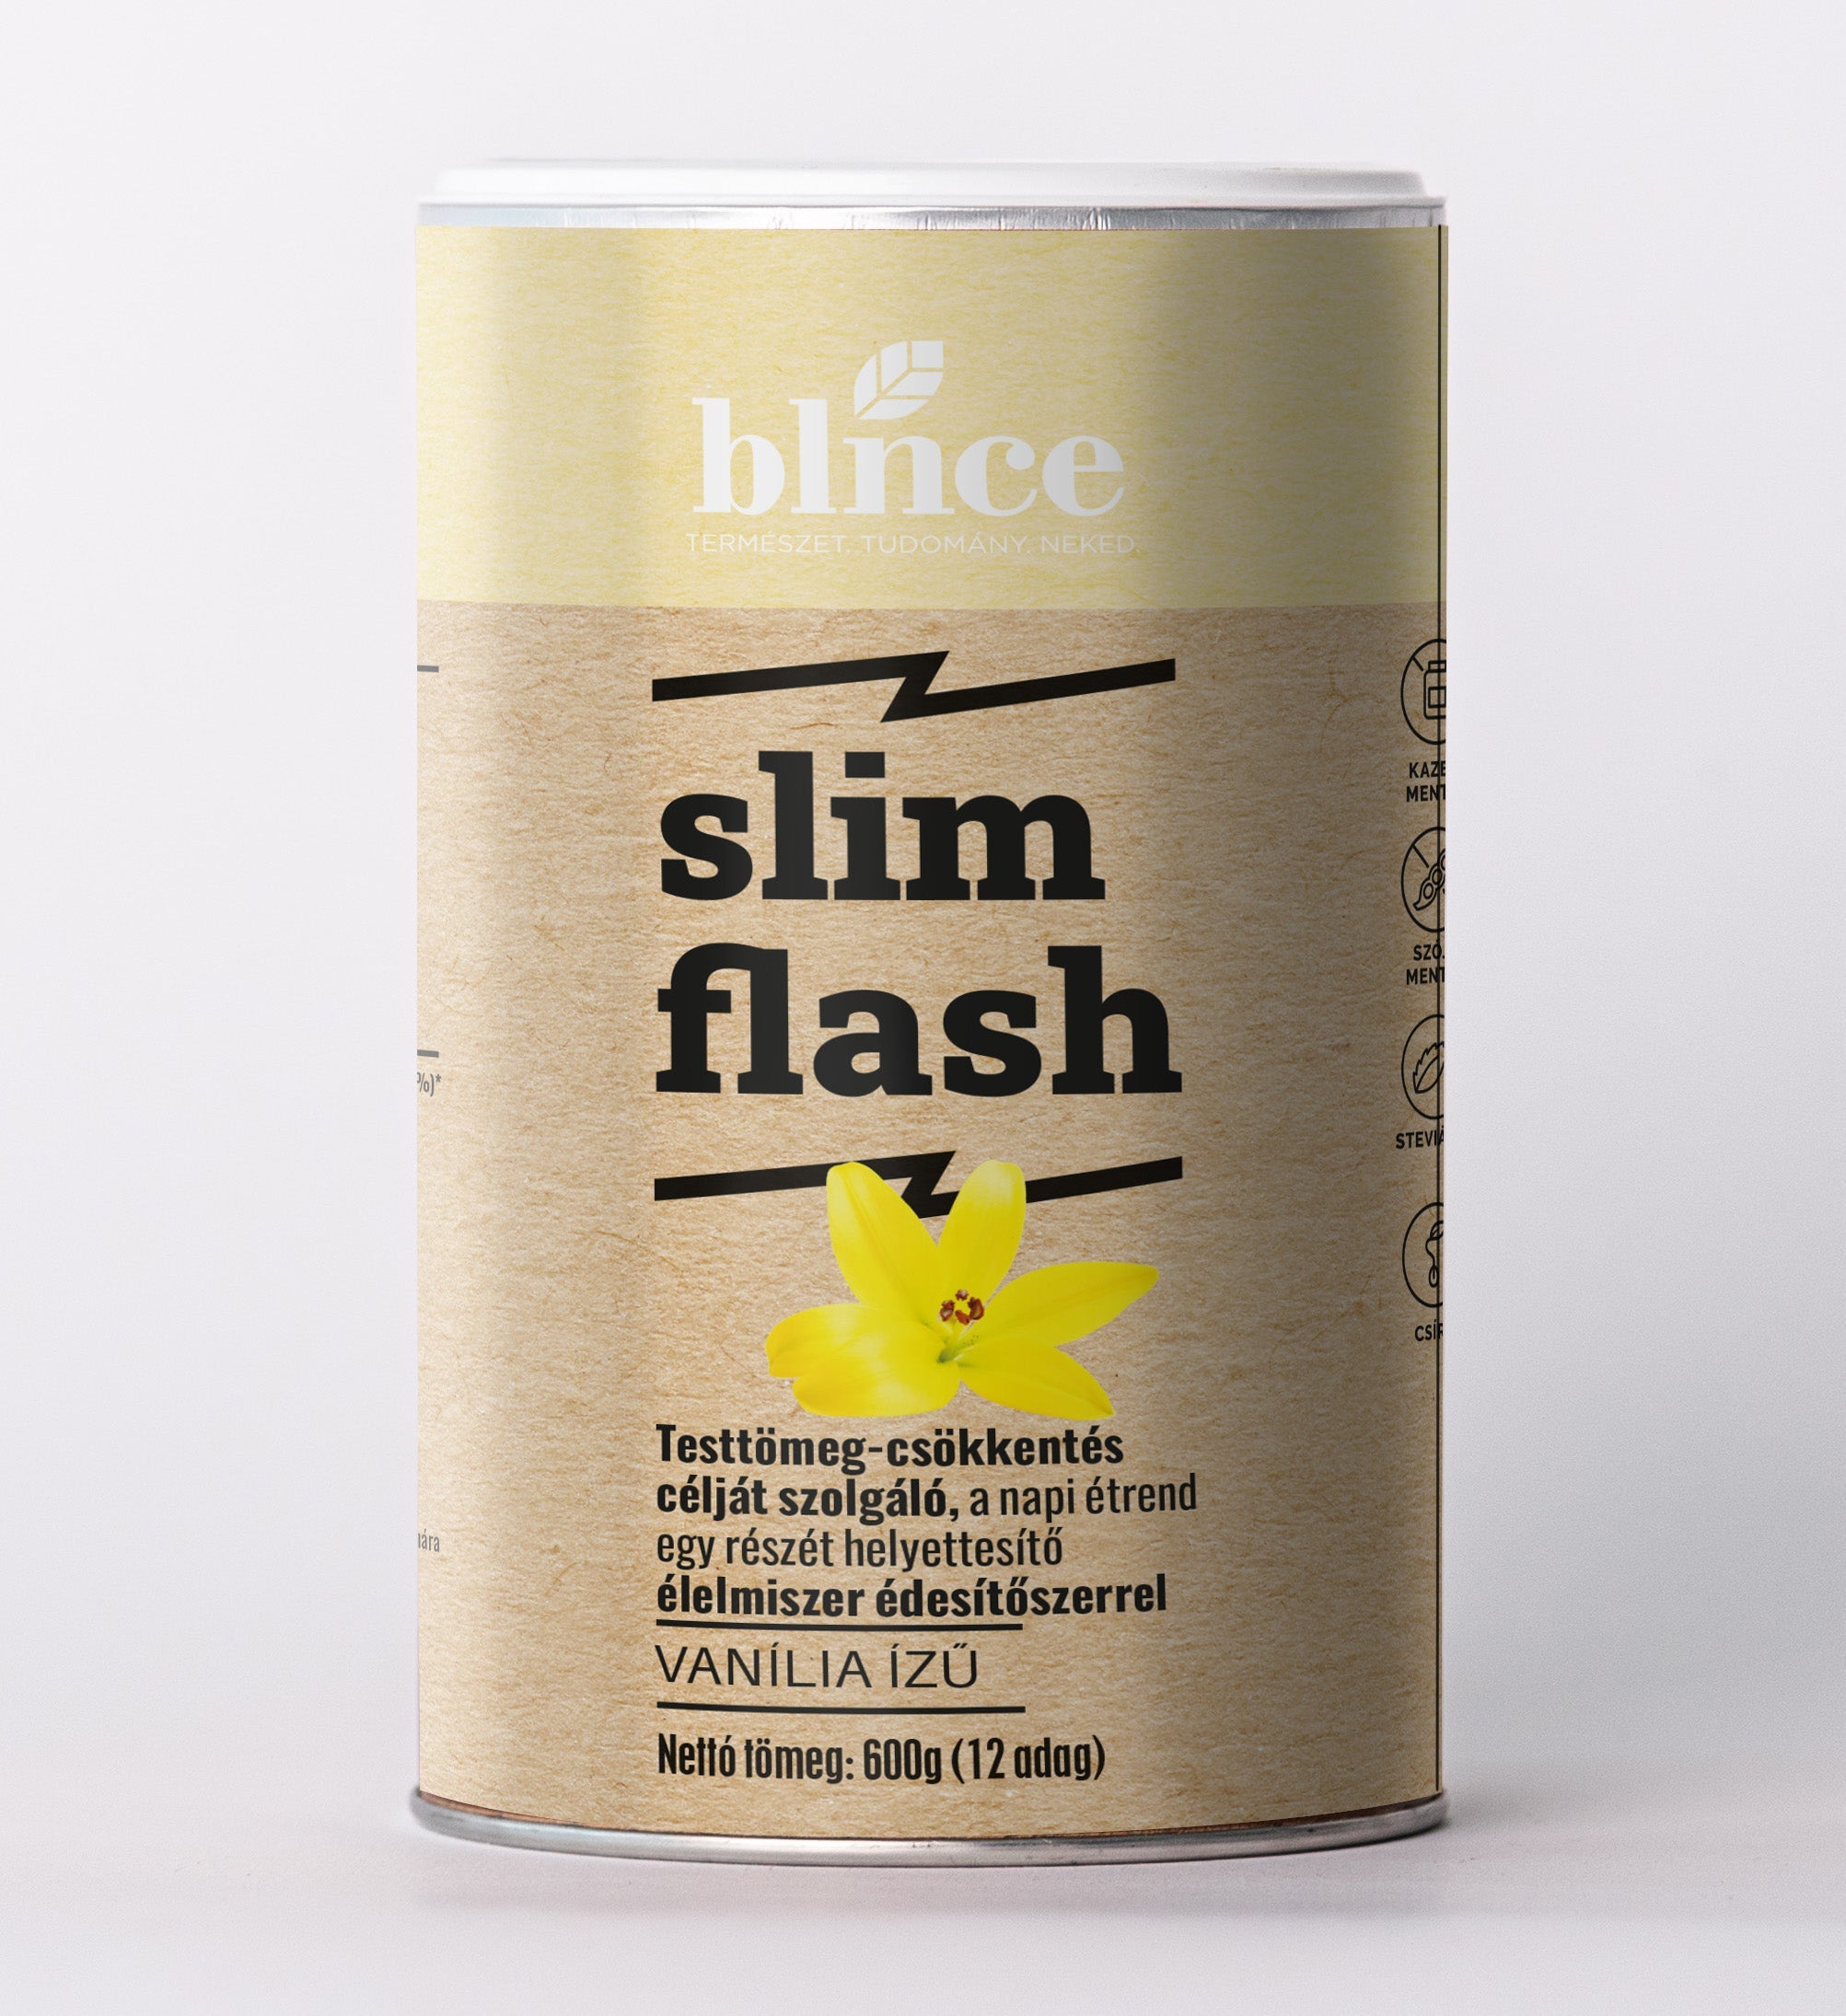 SlimFlash fogyókúrás por többféle ízben - blnce.hu